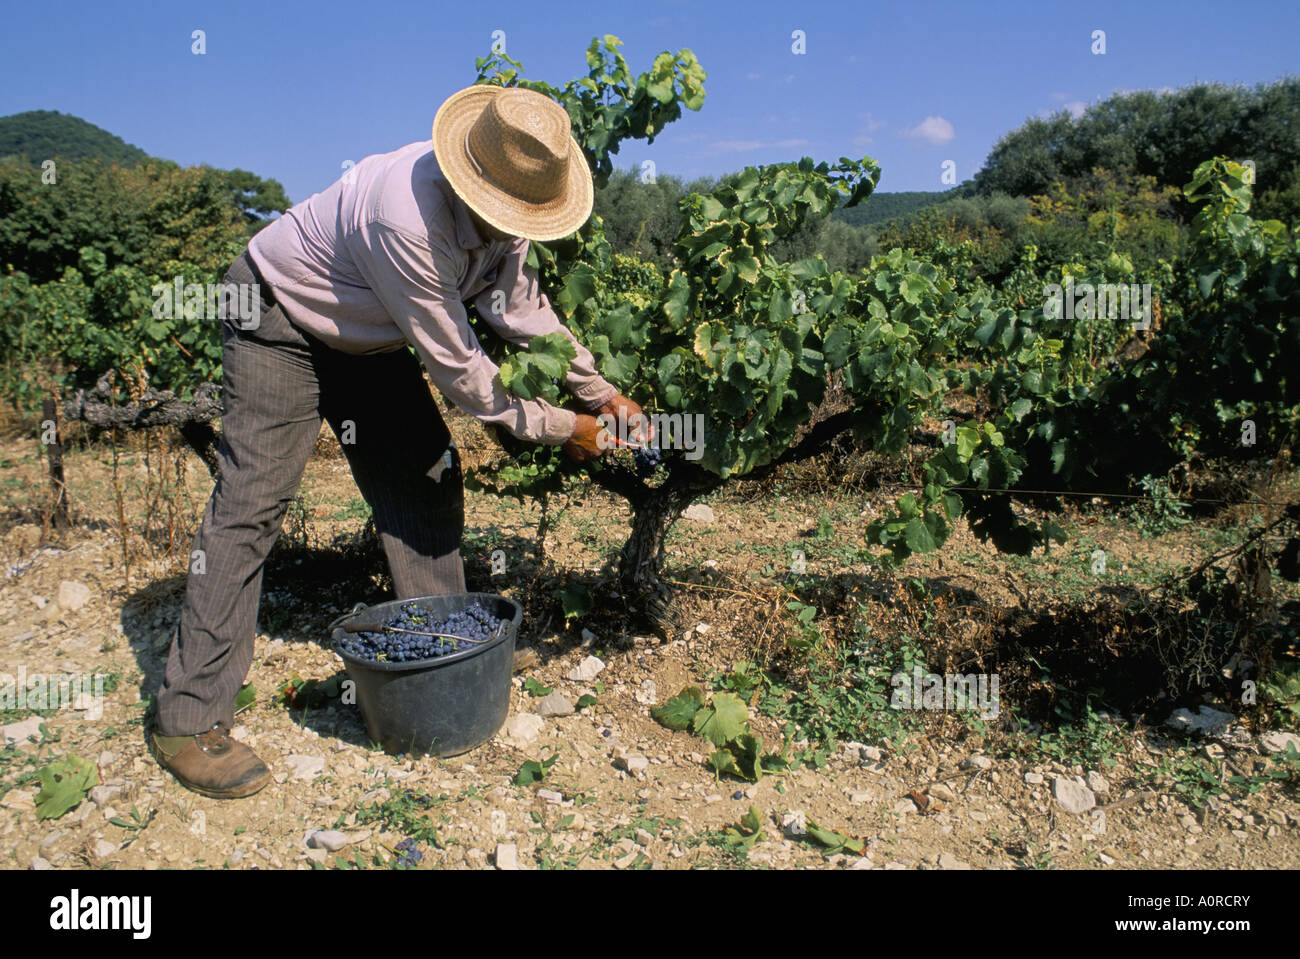 Spanische Saisonarbeiter Kommissionierung Trauben Seguret Region Vaucluse Provence Frankreich Europa Stockfoto